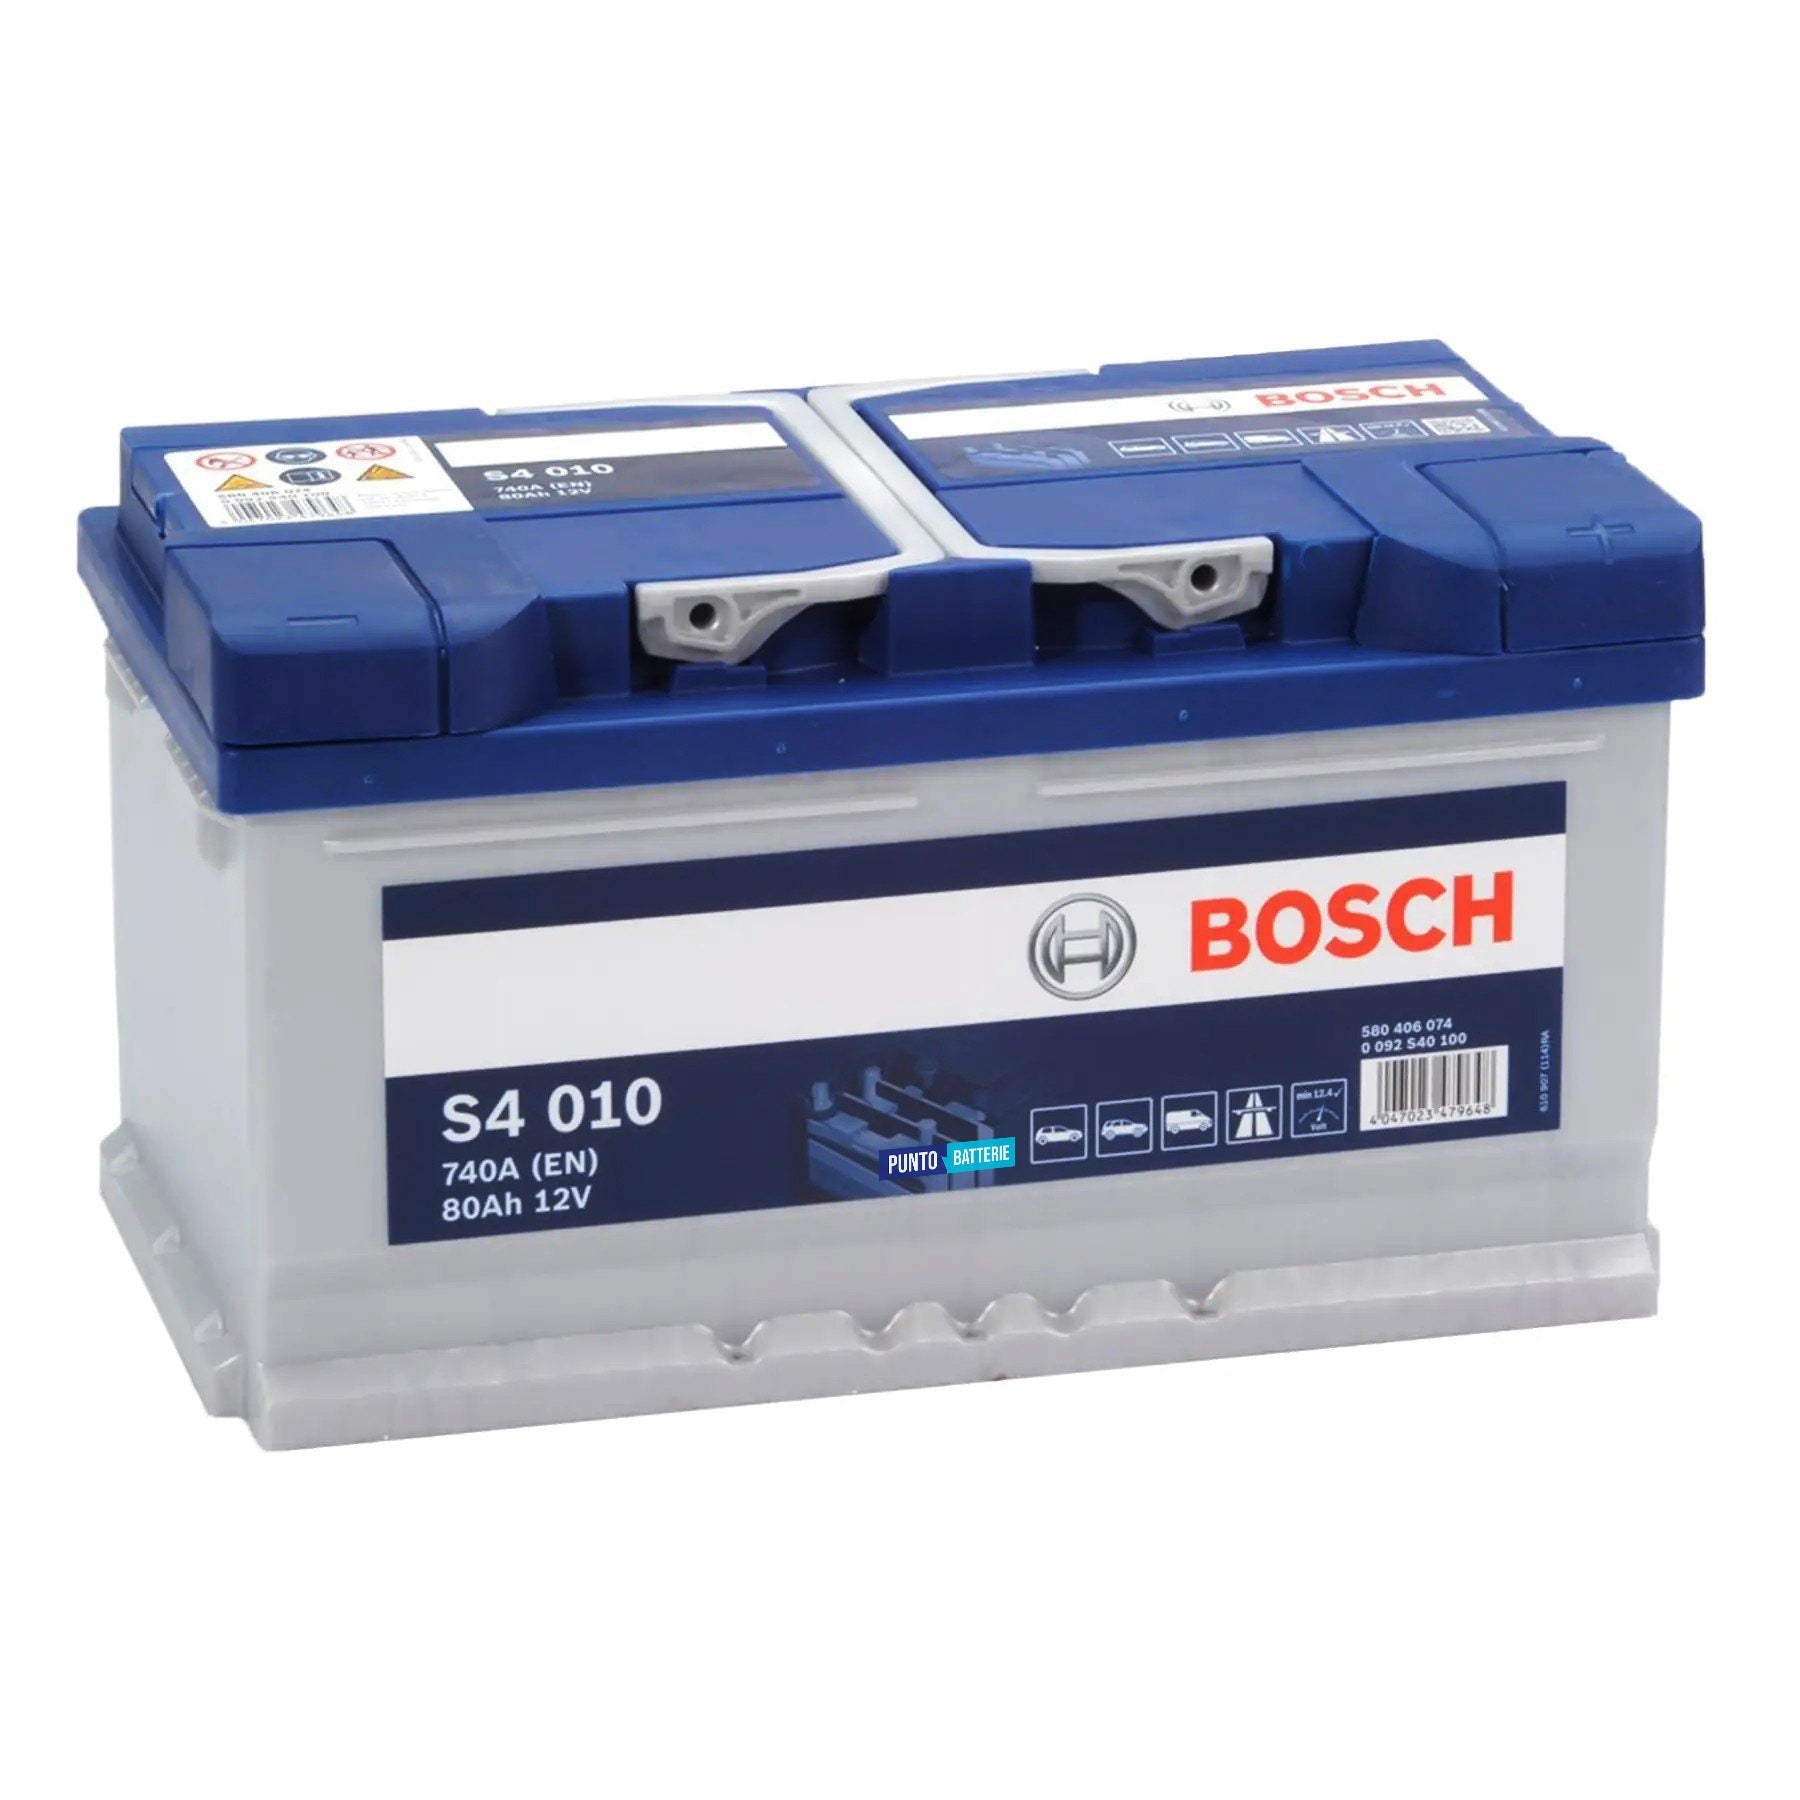 Batteria originale Bosch S4 S4 010, dimensioni 315 x 175 x 175, polo positivo a destra, 12 volt, 80 amperora, 740 ampere. Batteria per auto e veicoli leggeri.